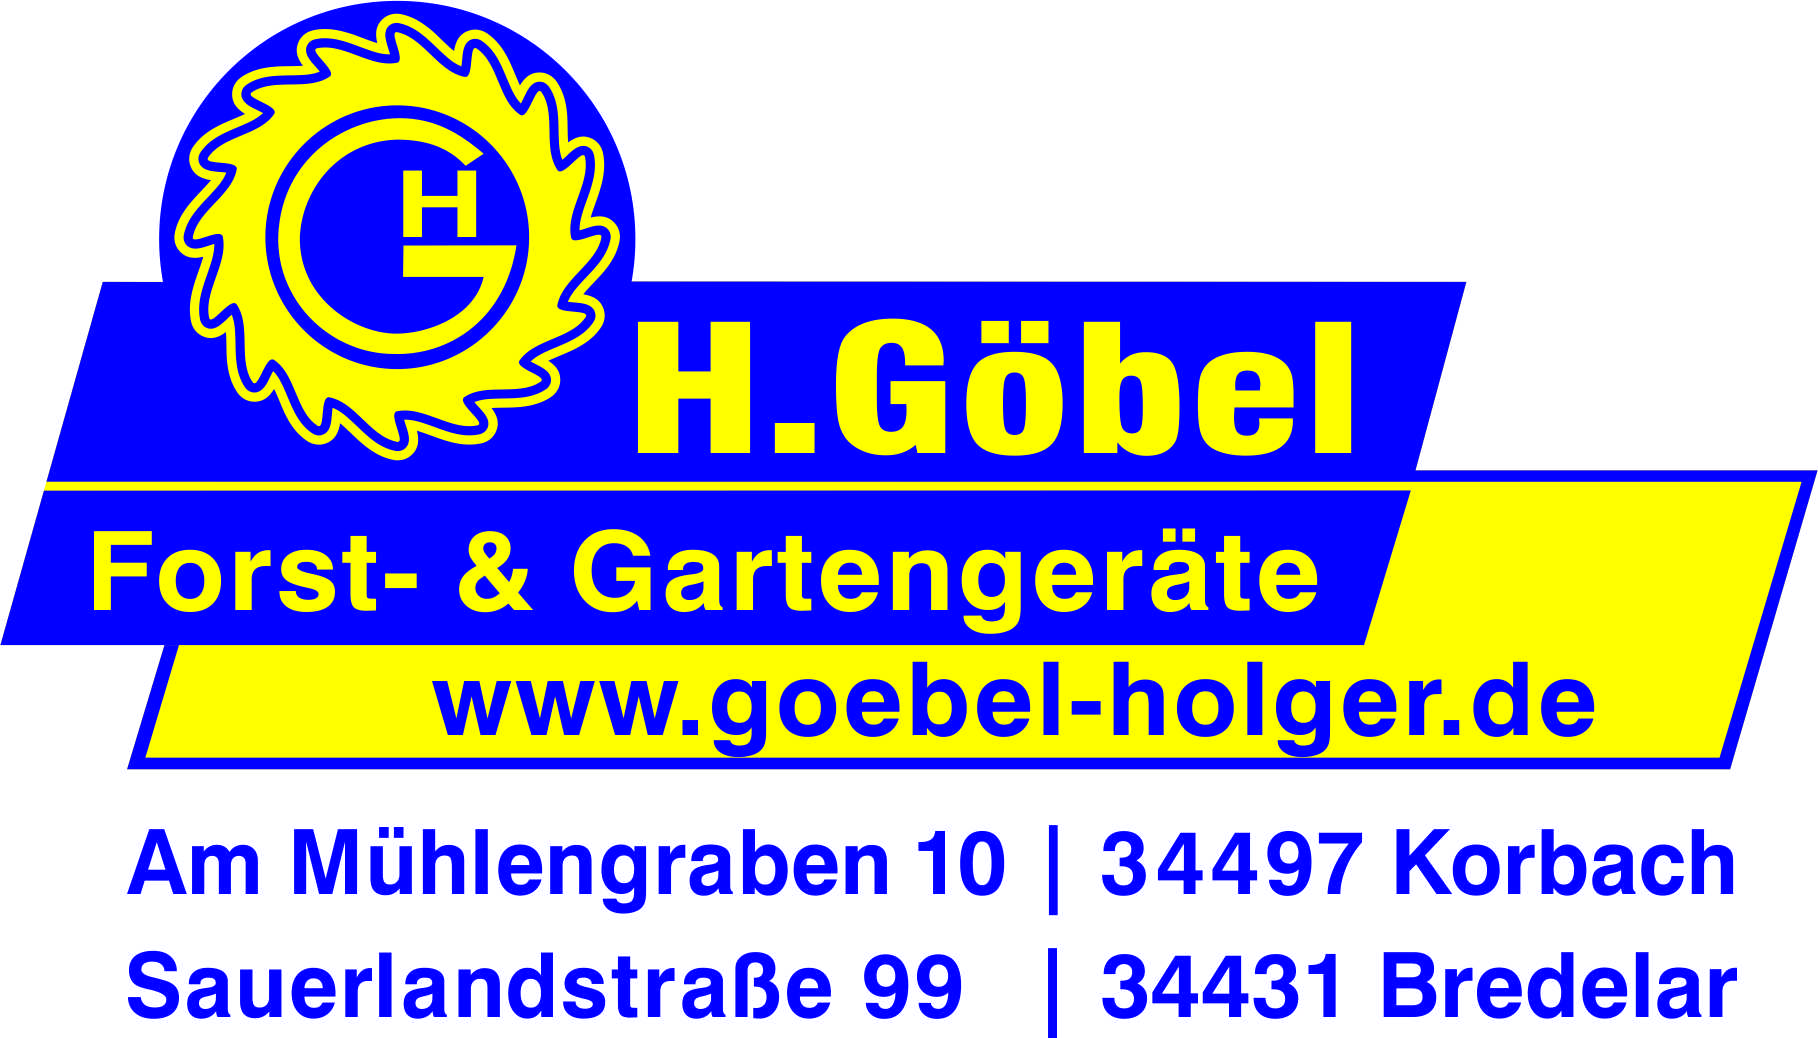 (c) Goebel-holger.de